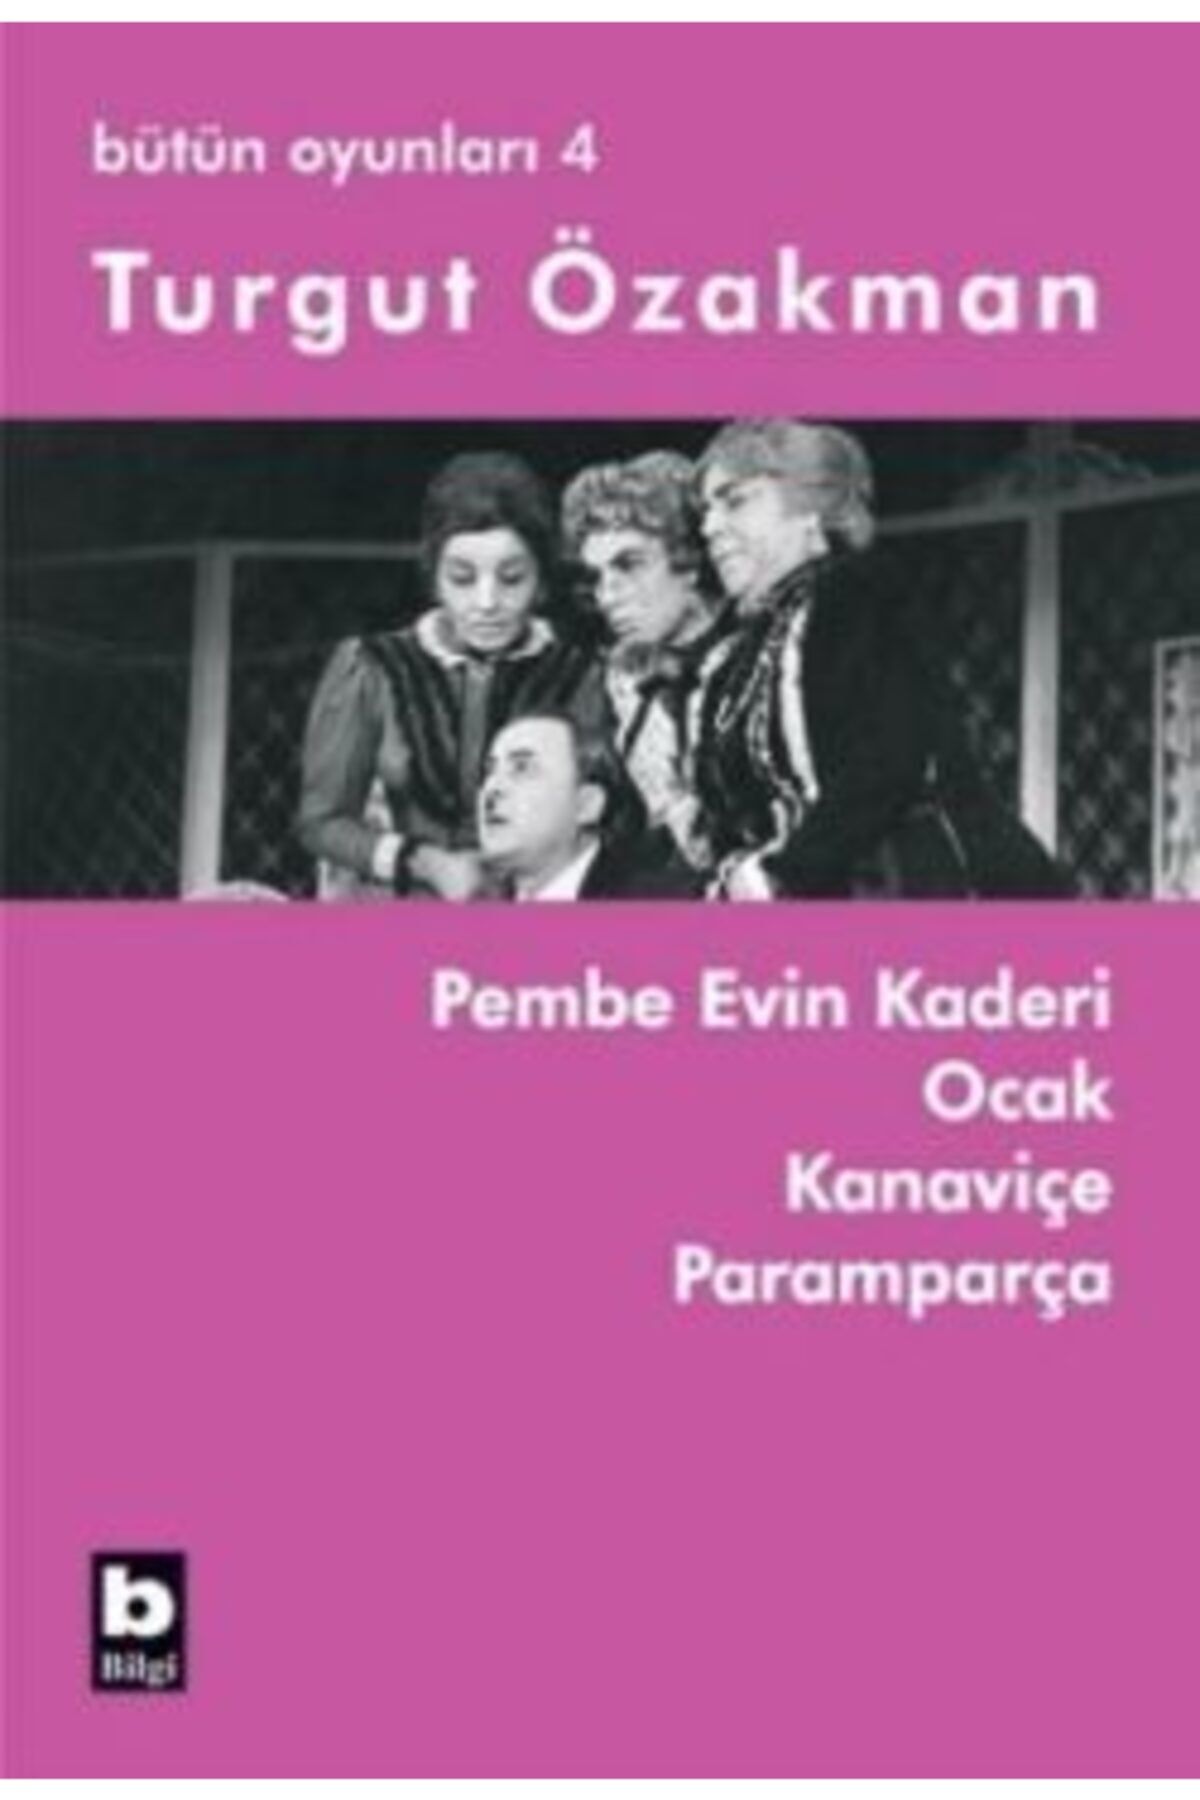 Bilgi Yayınları Bütün Oyunları 4-turgut Özakman-